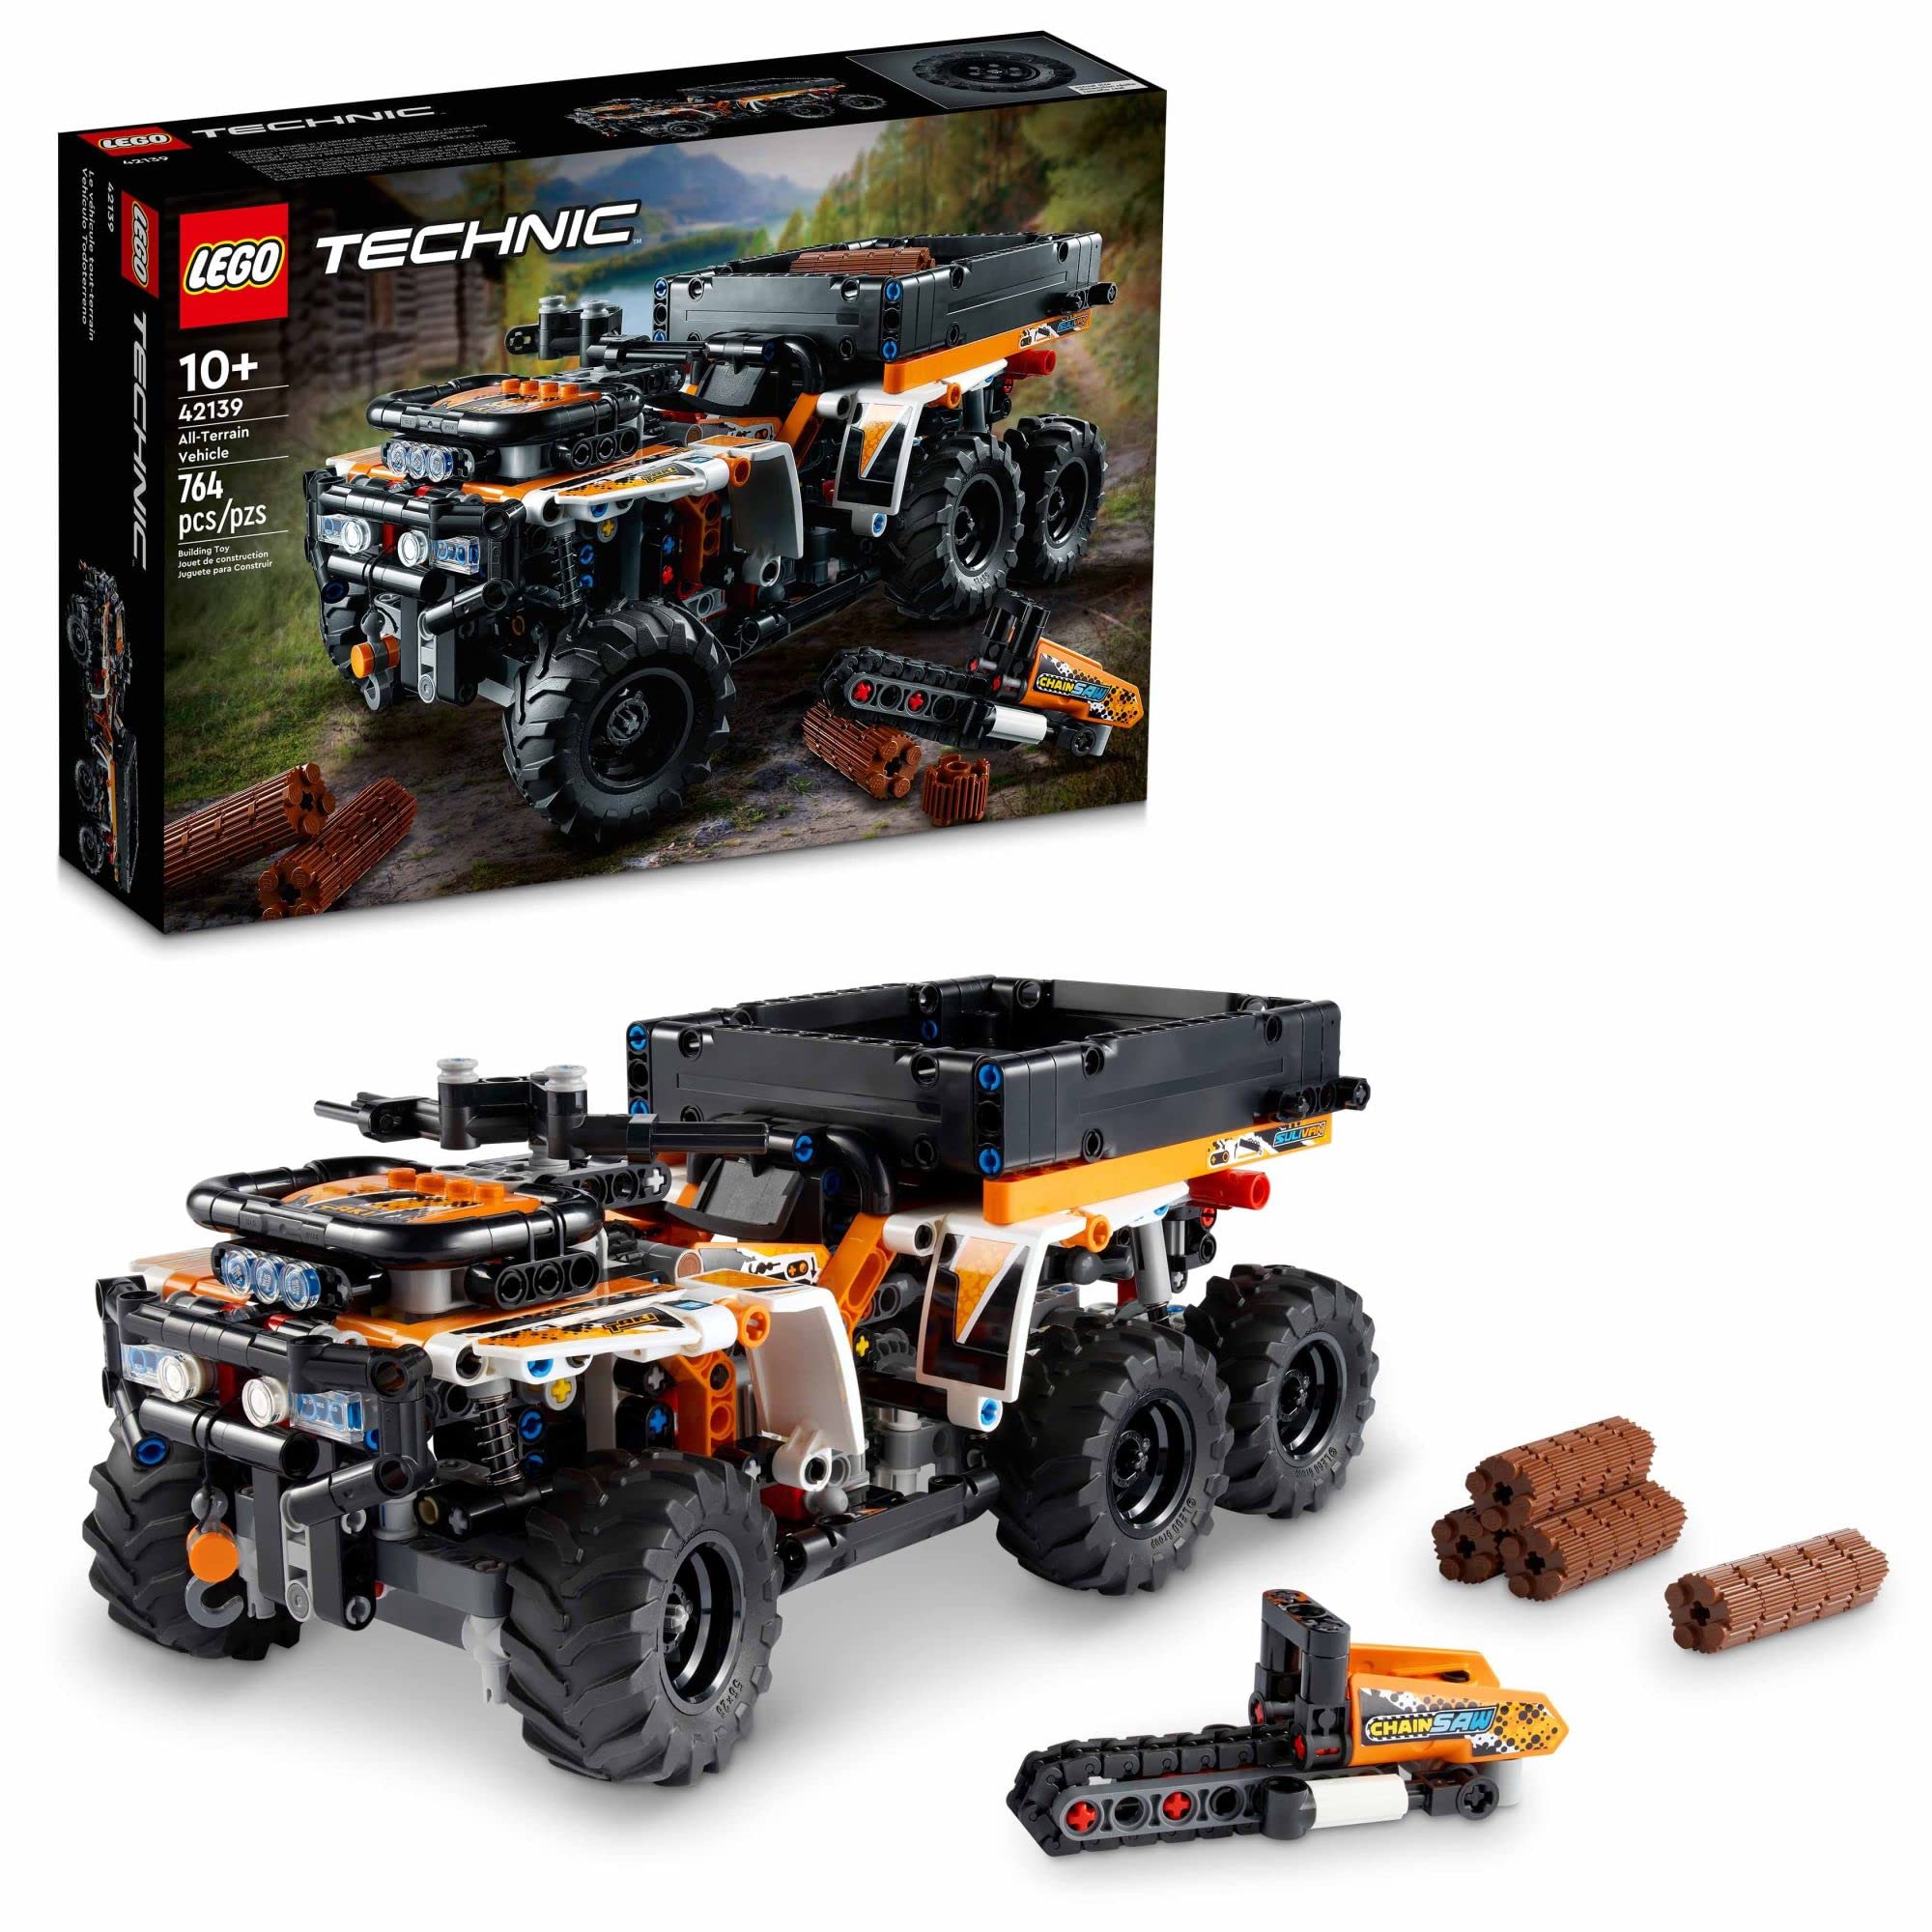 レゴ LEGO Technic All-Terrain Vehicle 42139 Model Building Kit Build and Explore a Detailed ATV Model Packed with Feature